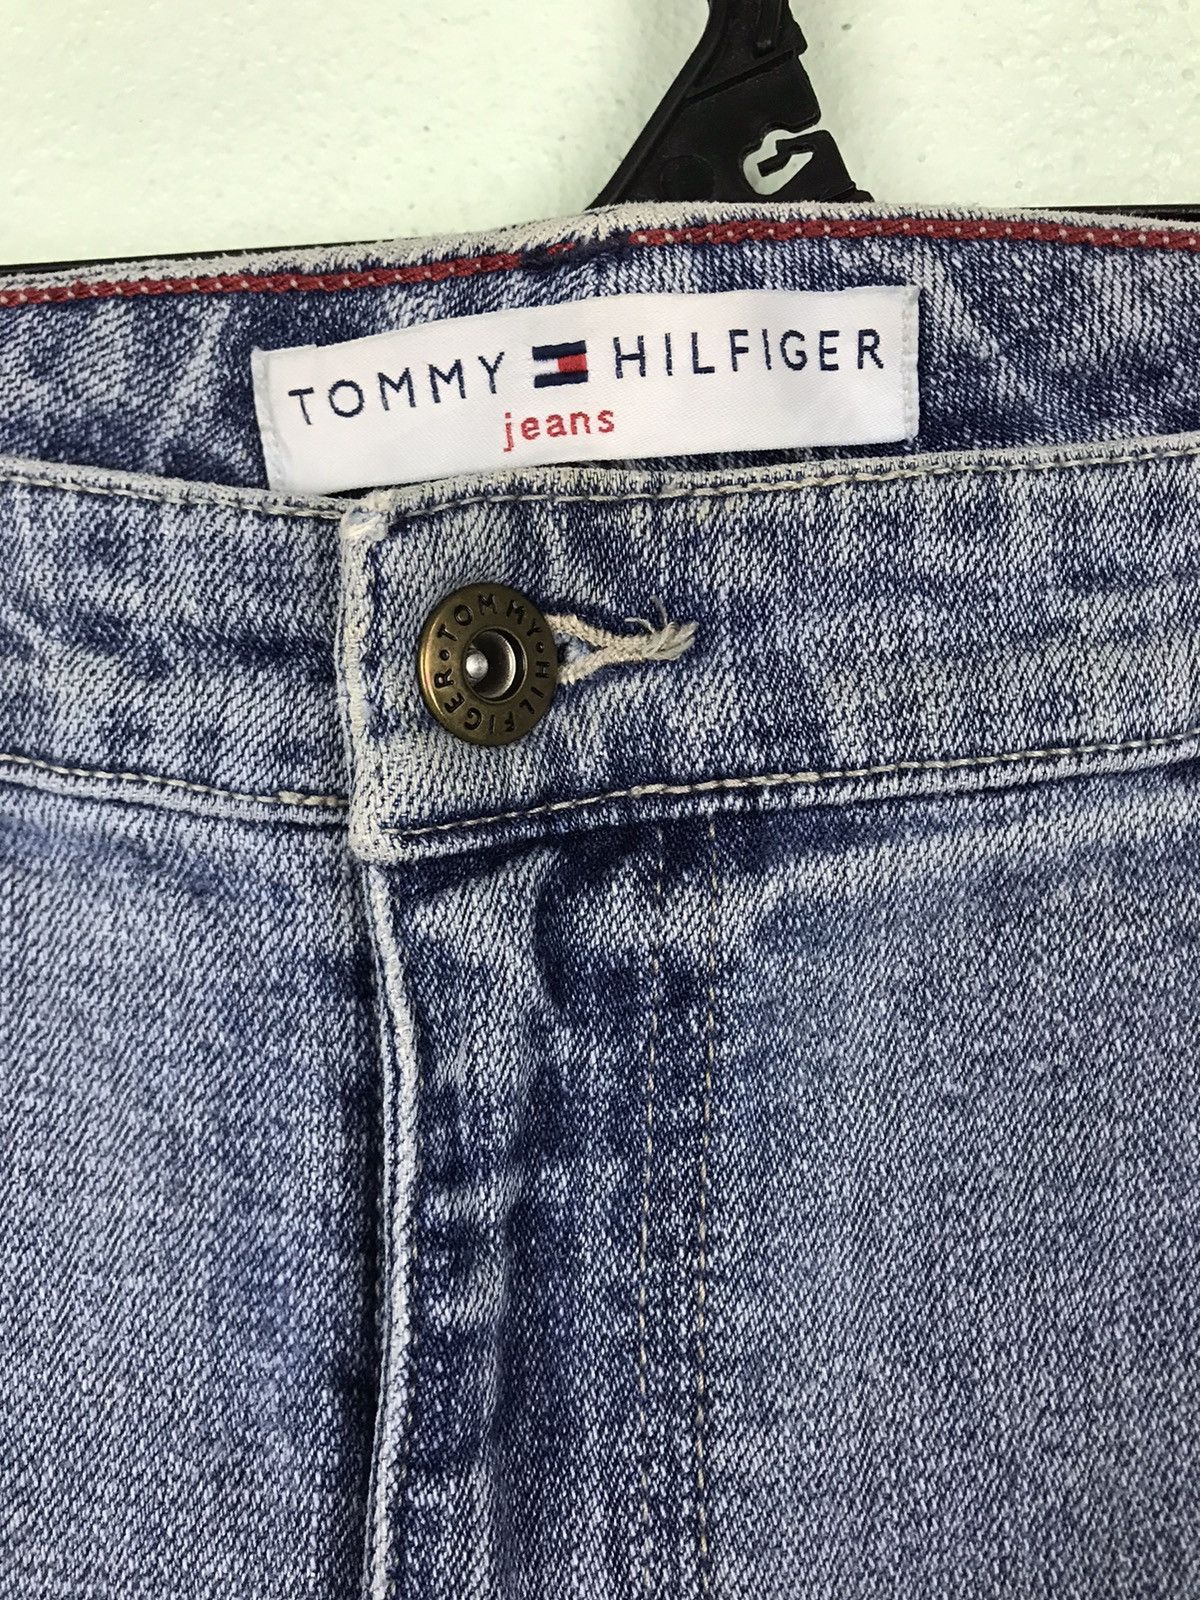 Vintage Tommy Hilfiger Jeans - gh0620 - 3